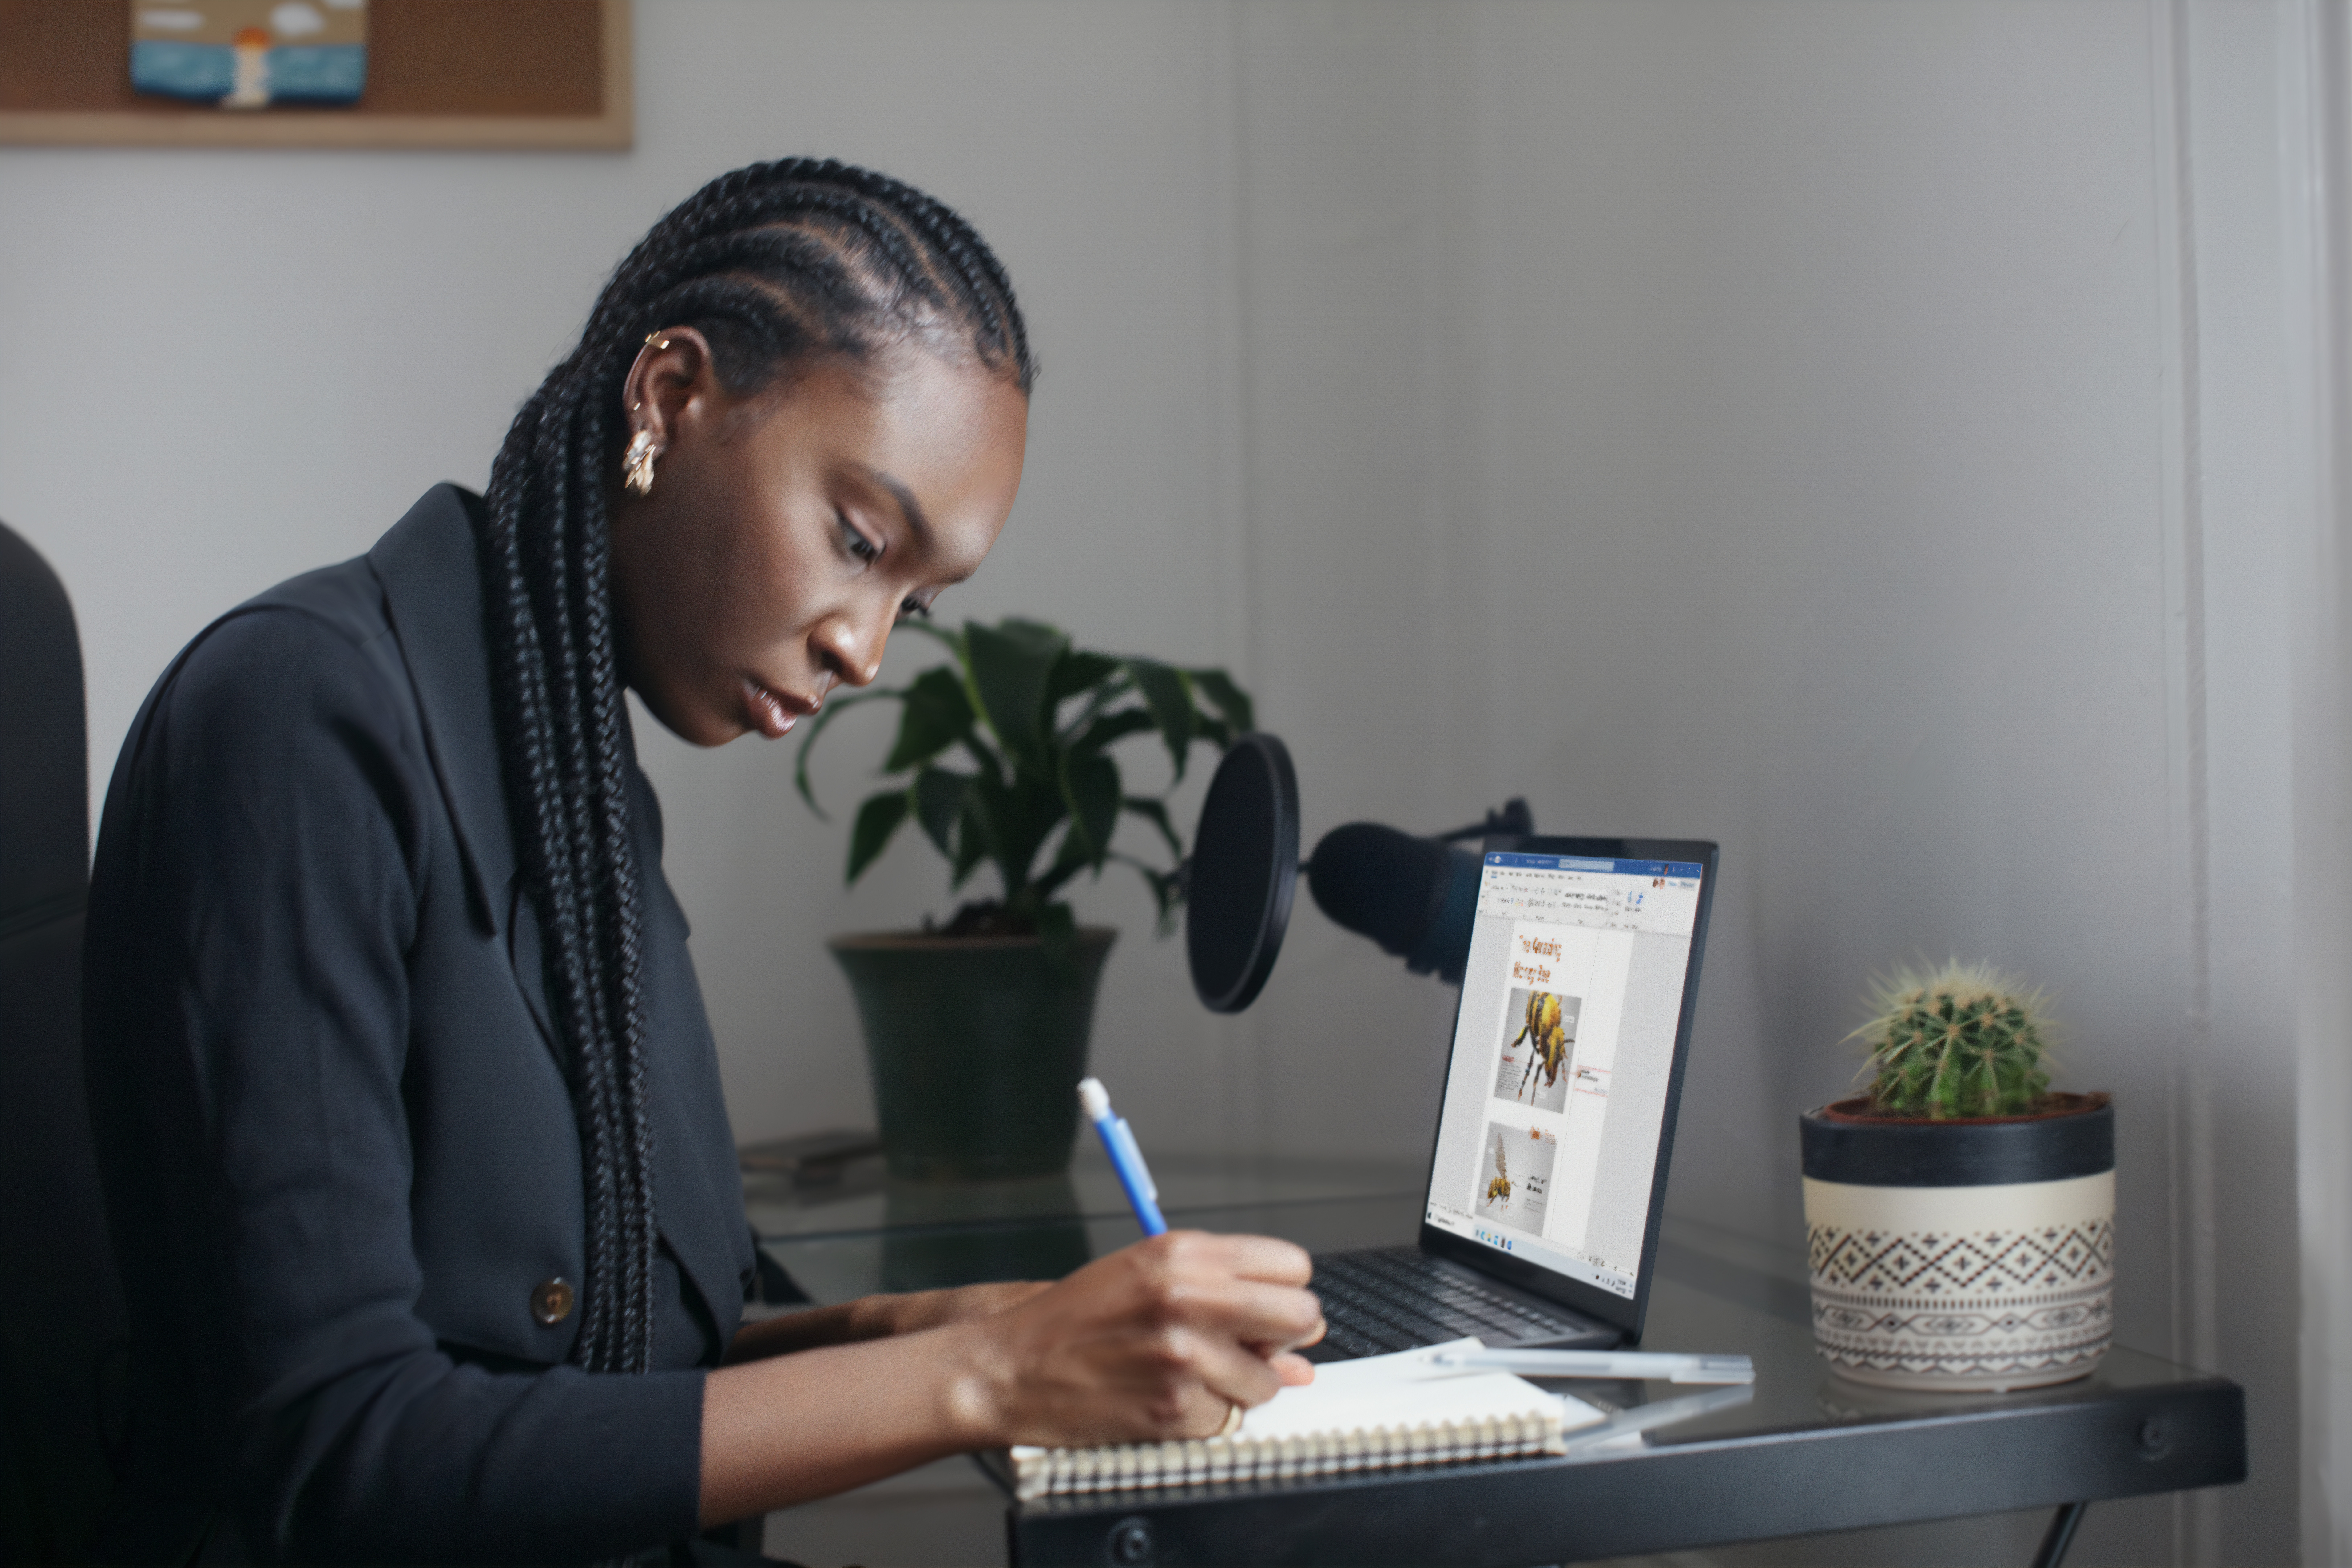 Mulher negra de cabelo preto e trança nagô veste camisa de botão preta e está sentada em frente a um notebook de perfil para a foto, anotando algo